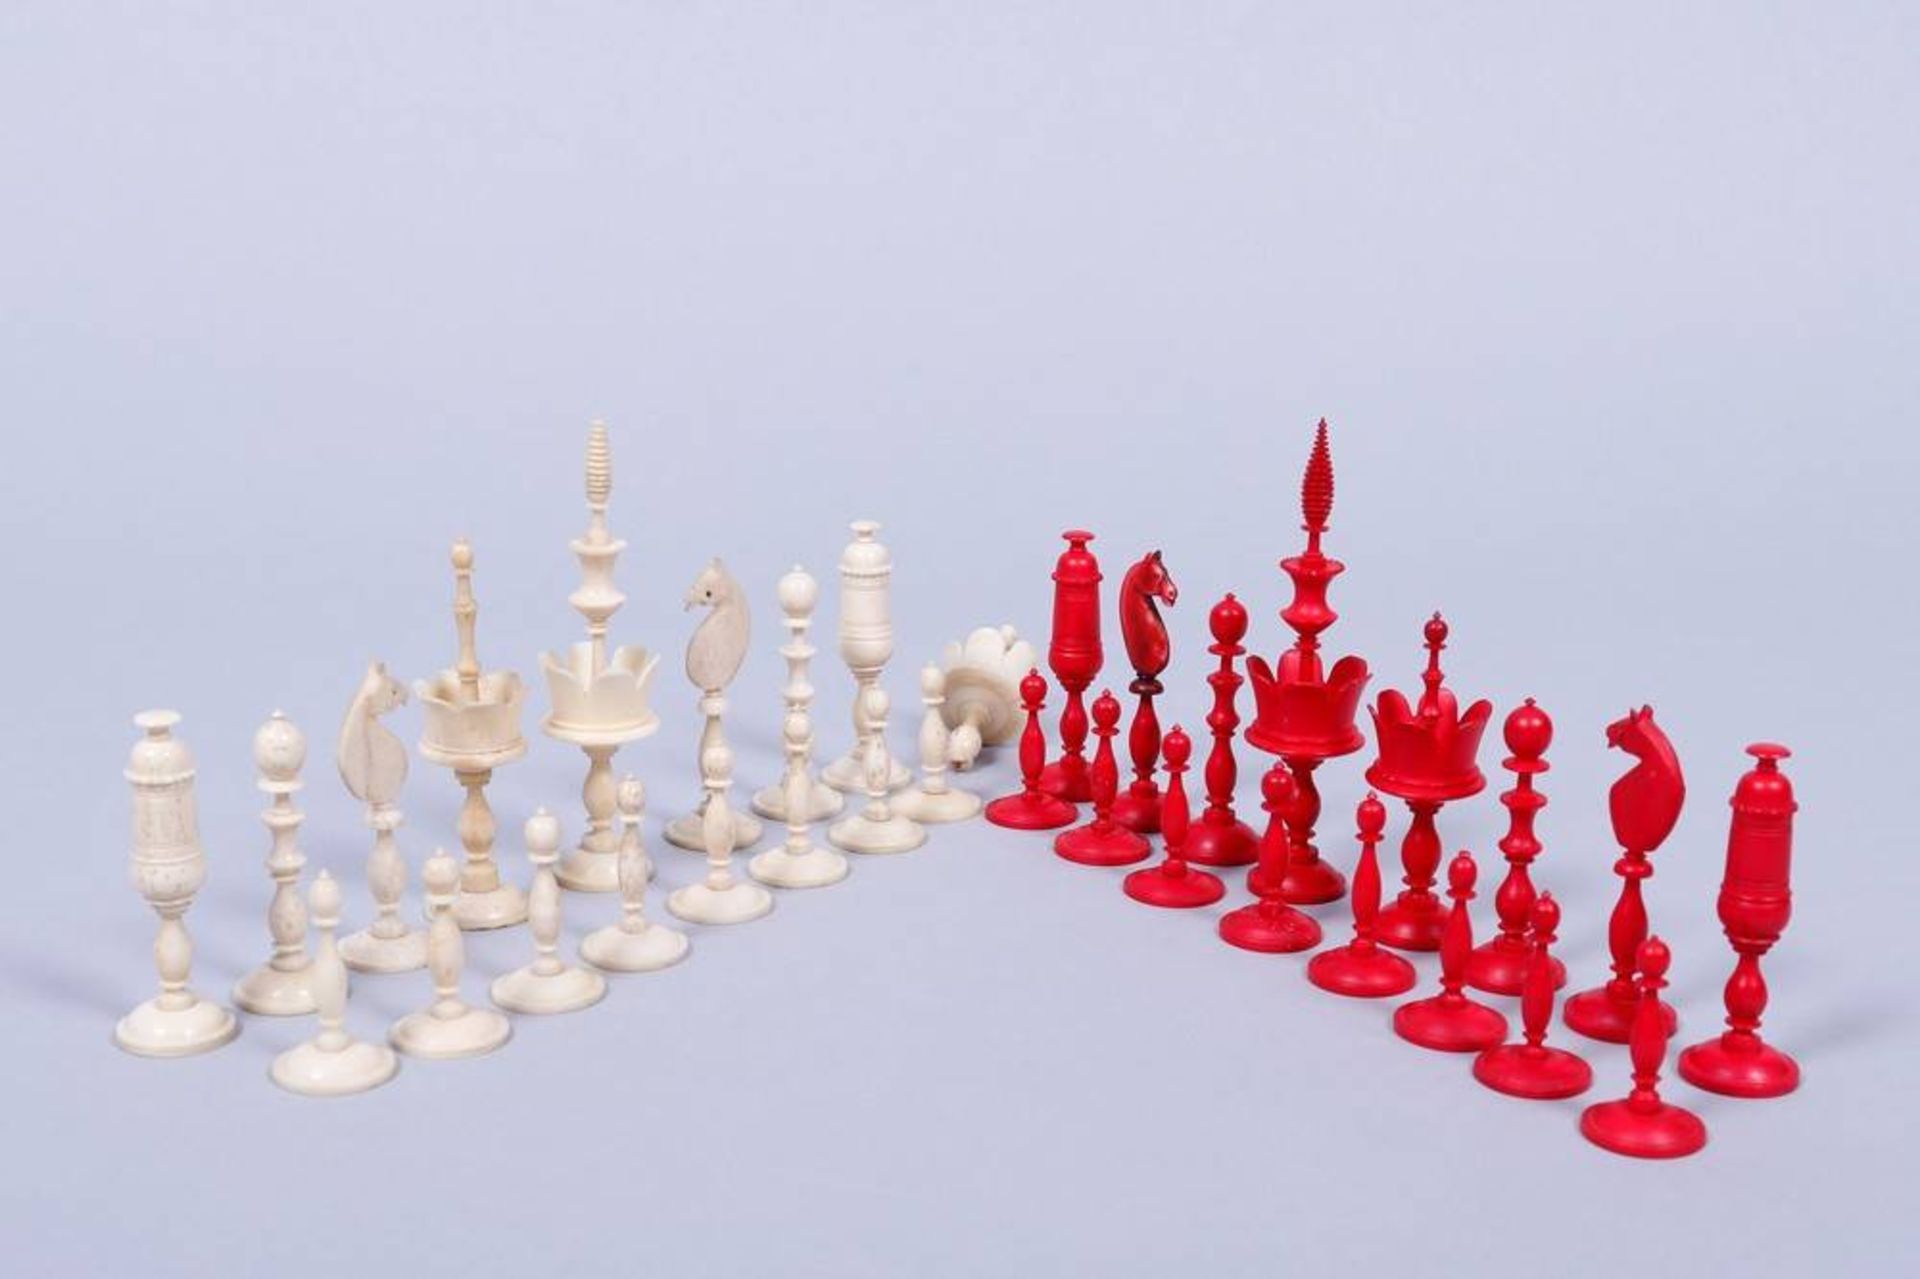 Schachfiguren, wohl Nürnberg, 19.Jh. Einkorbsatz, Elfenbein, partiell rot gefärbt, H 3,5-9,5cm, 1